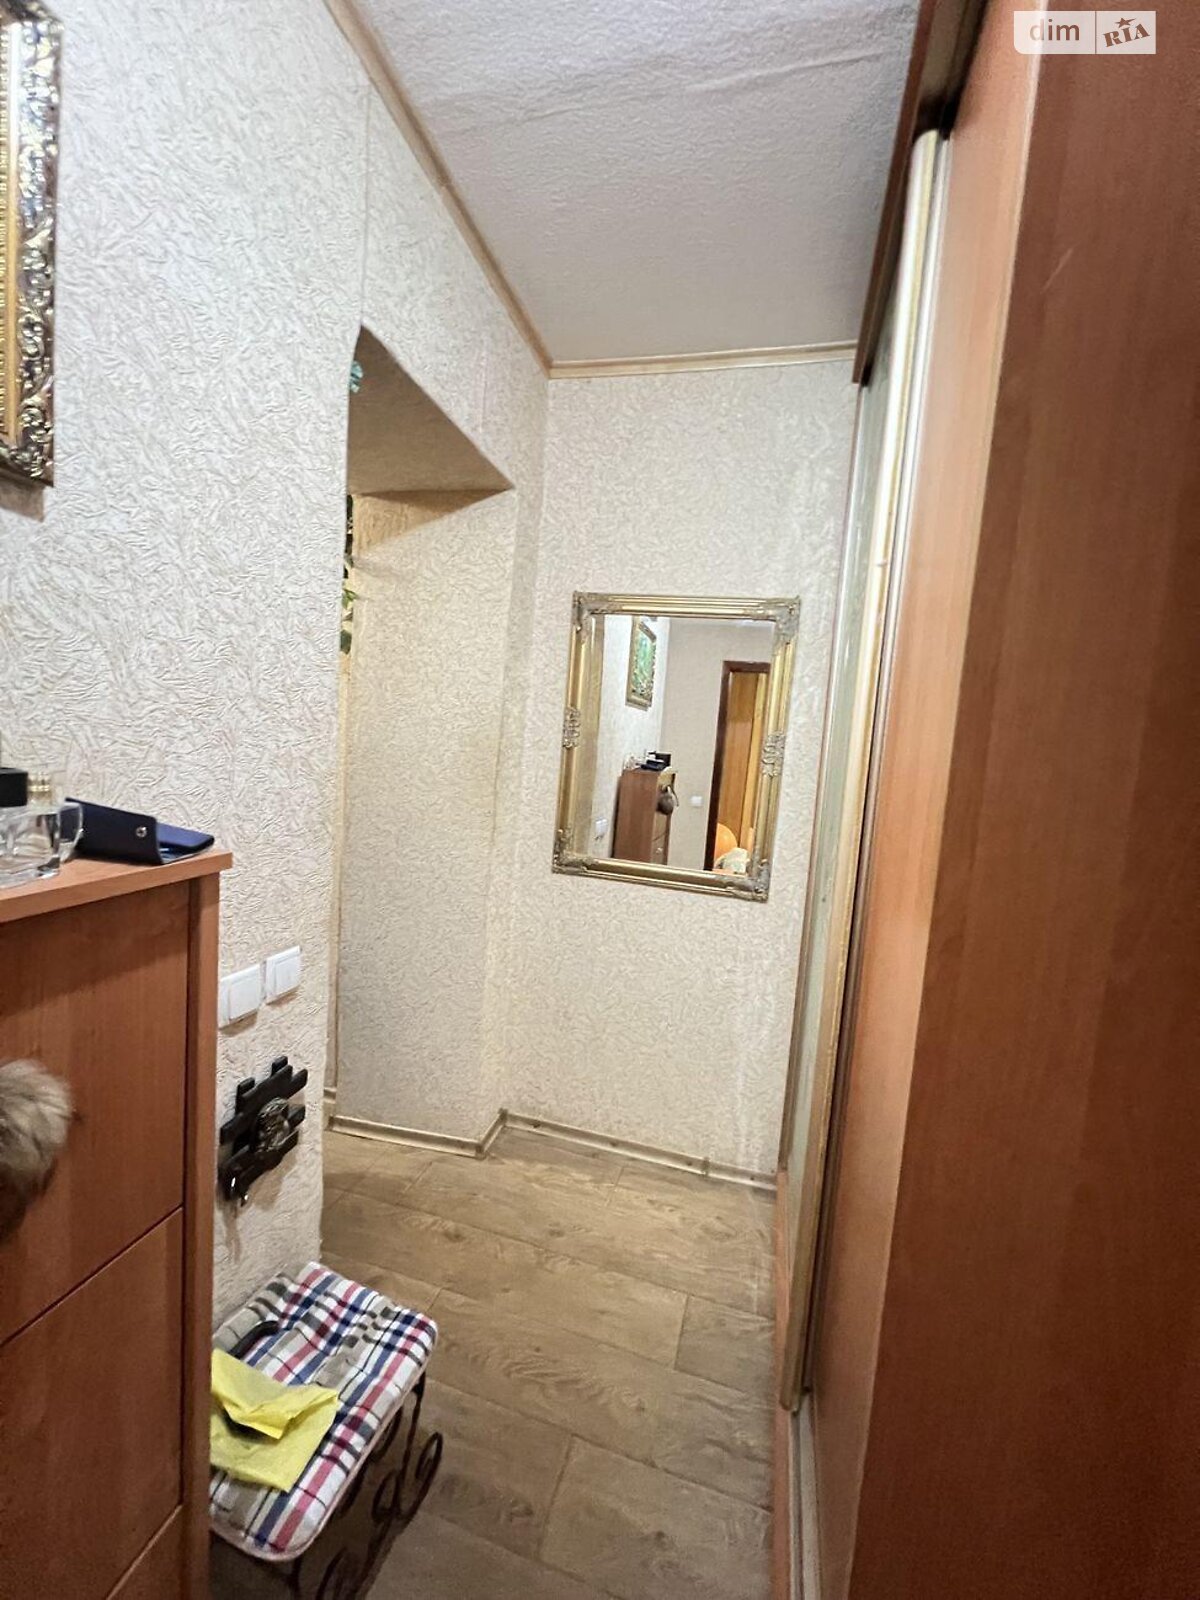 Комната в Харькове, на ул. Краснодарская 171В в районе 627-ой микрорайон на продажу фото 1